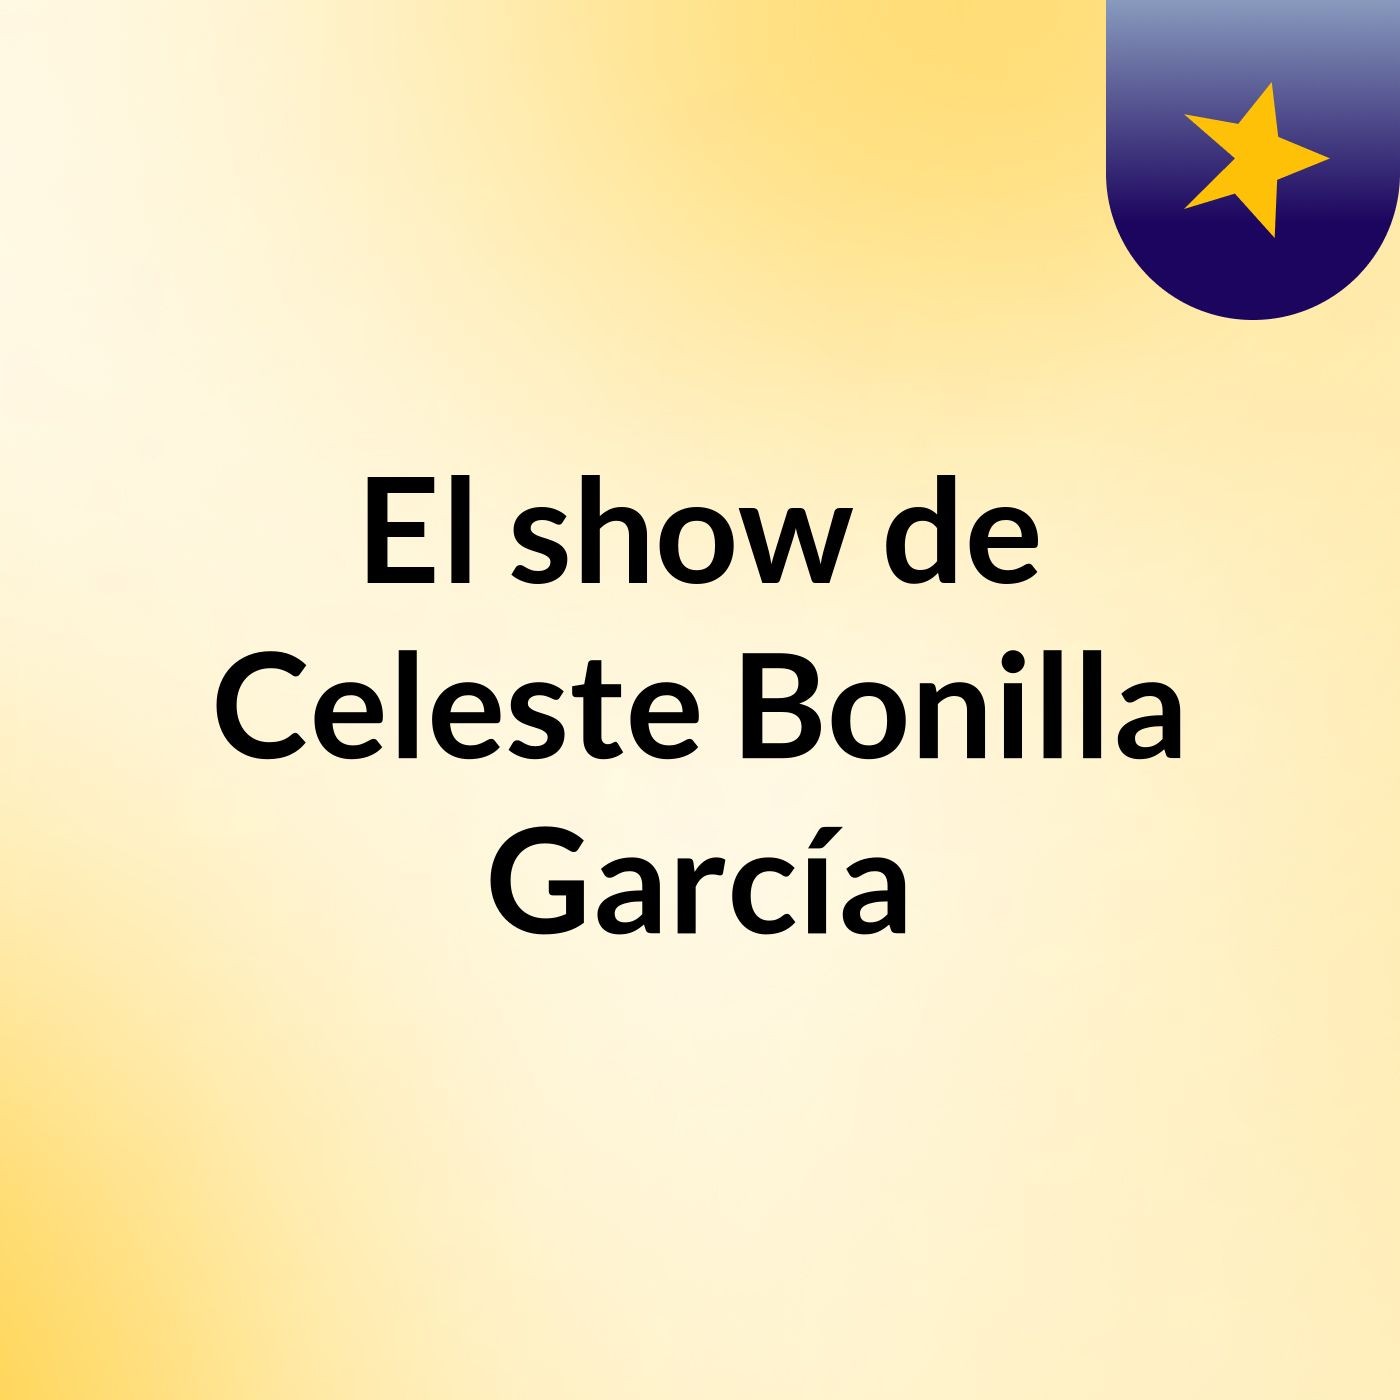 El show de Celeste Bonilla García